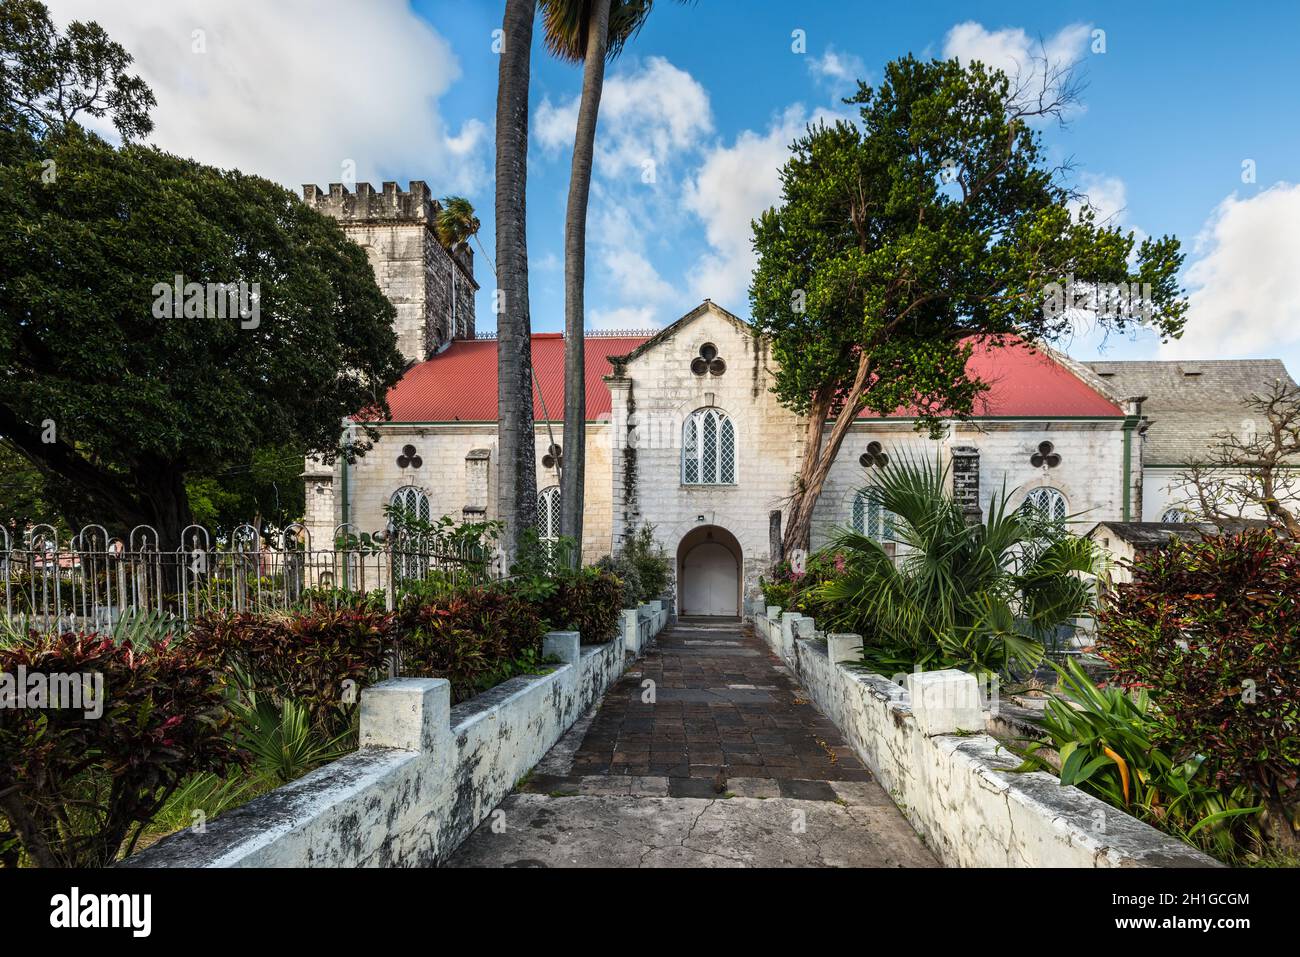 Bridgetown, Barbados - Dicembre 18, 2016: St Michael's Cattedrale Anglicana di Bridgetown, Barbados, West Indies, nelle Isole dei Caraibi. Foto Stock